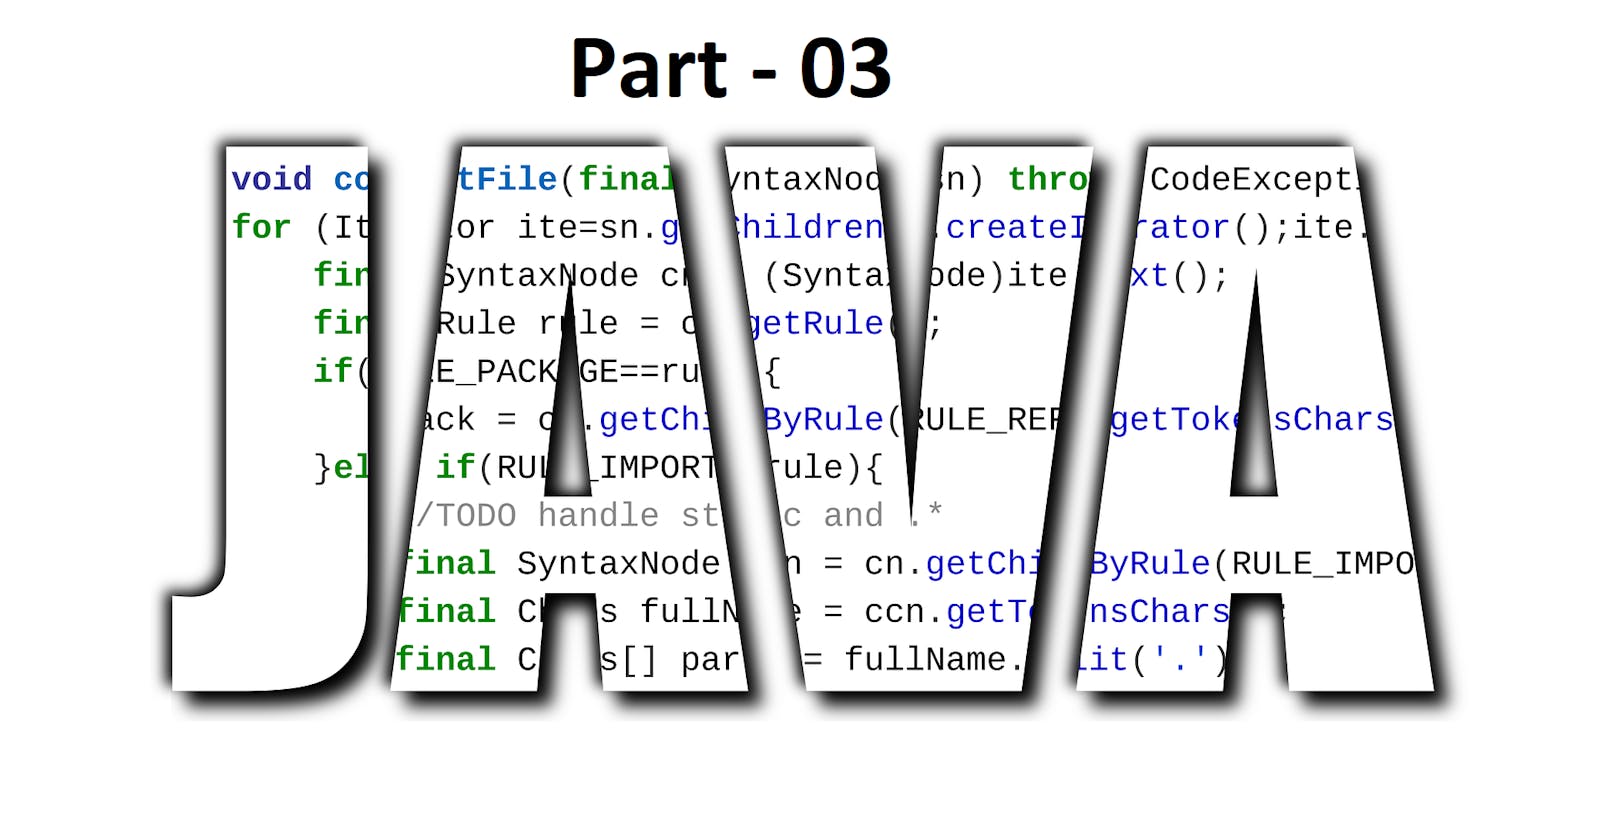 Java Concepts : Part - 03